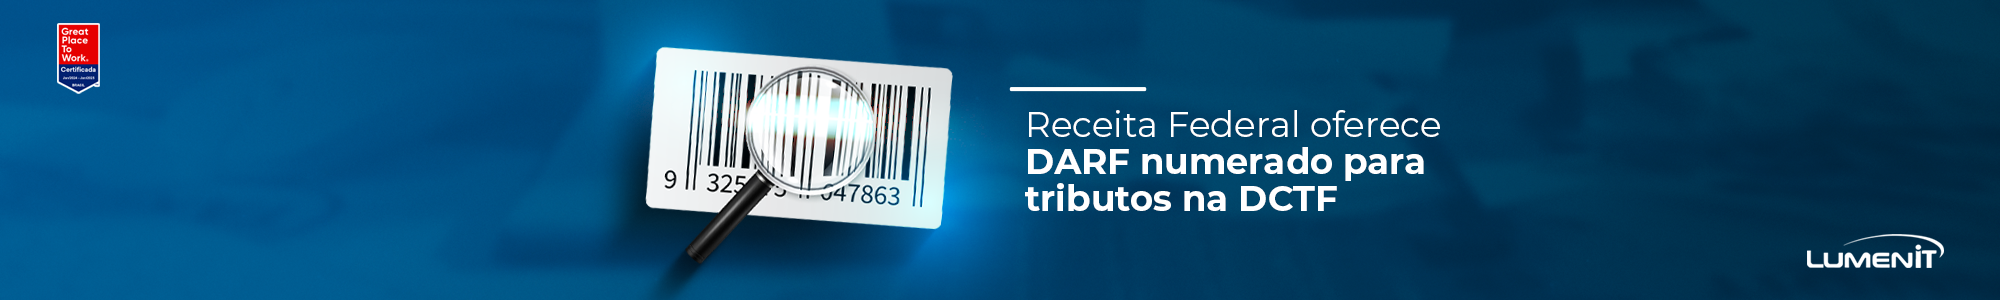 Receita Federal oferece DARF numerado para tributos na DCTF